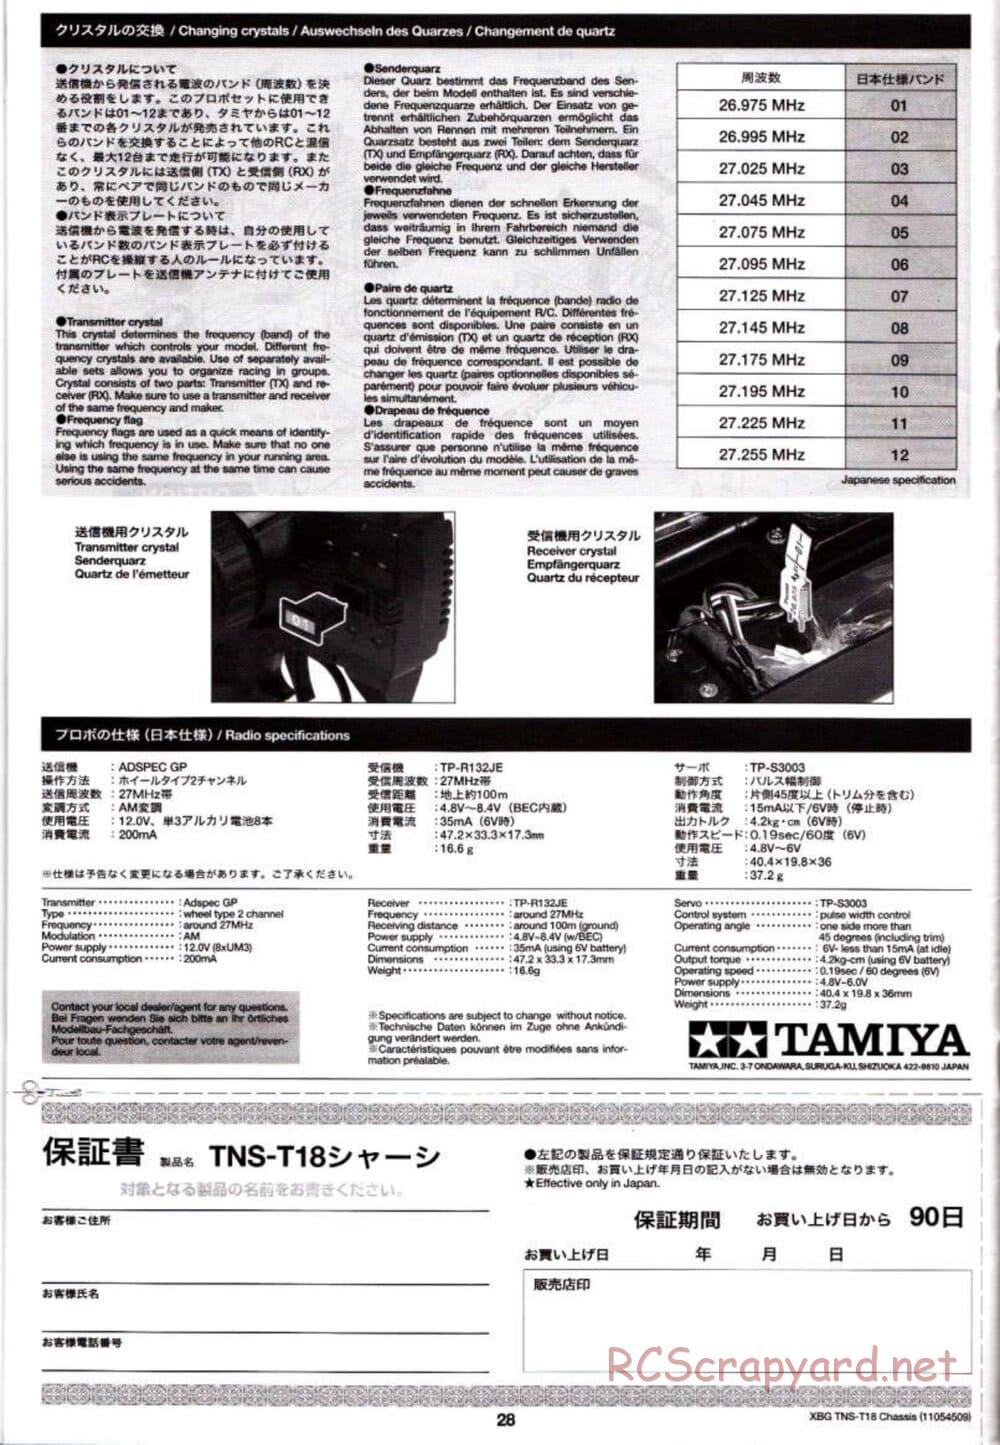 Tamiya - TNS-T18 Chassis - Manual - Page 28